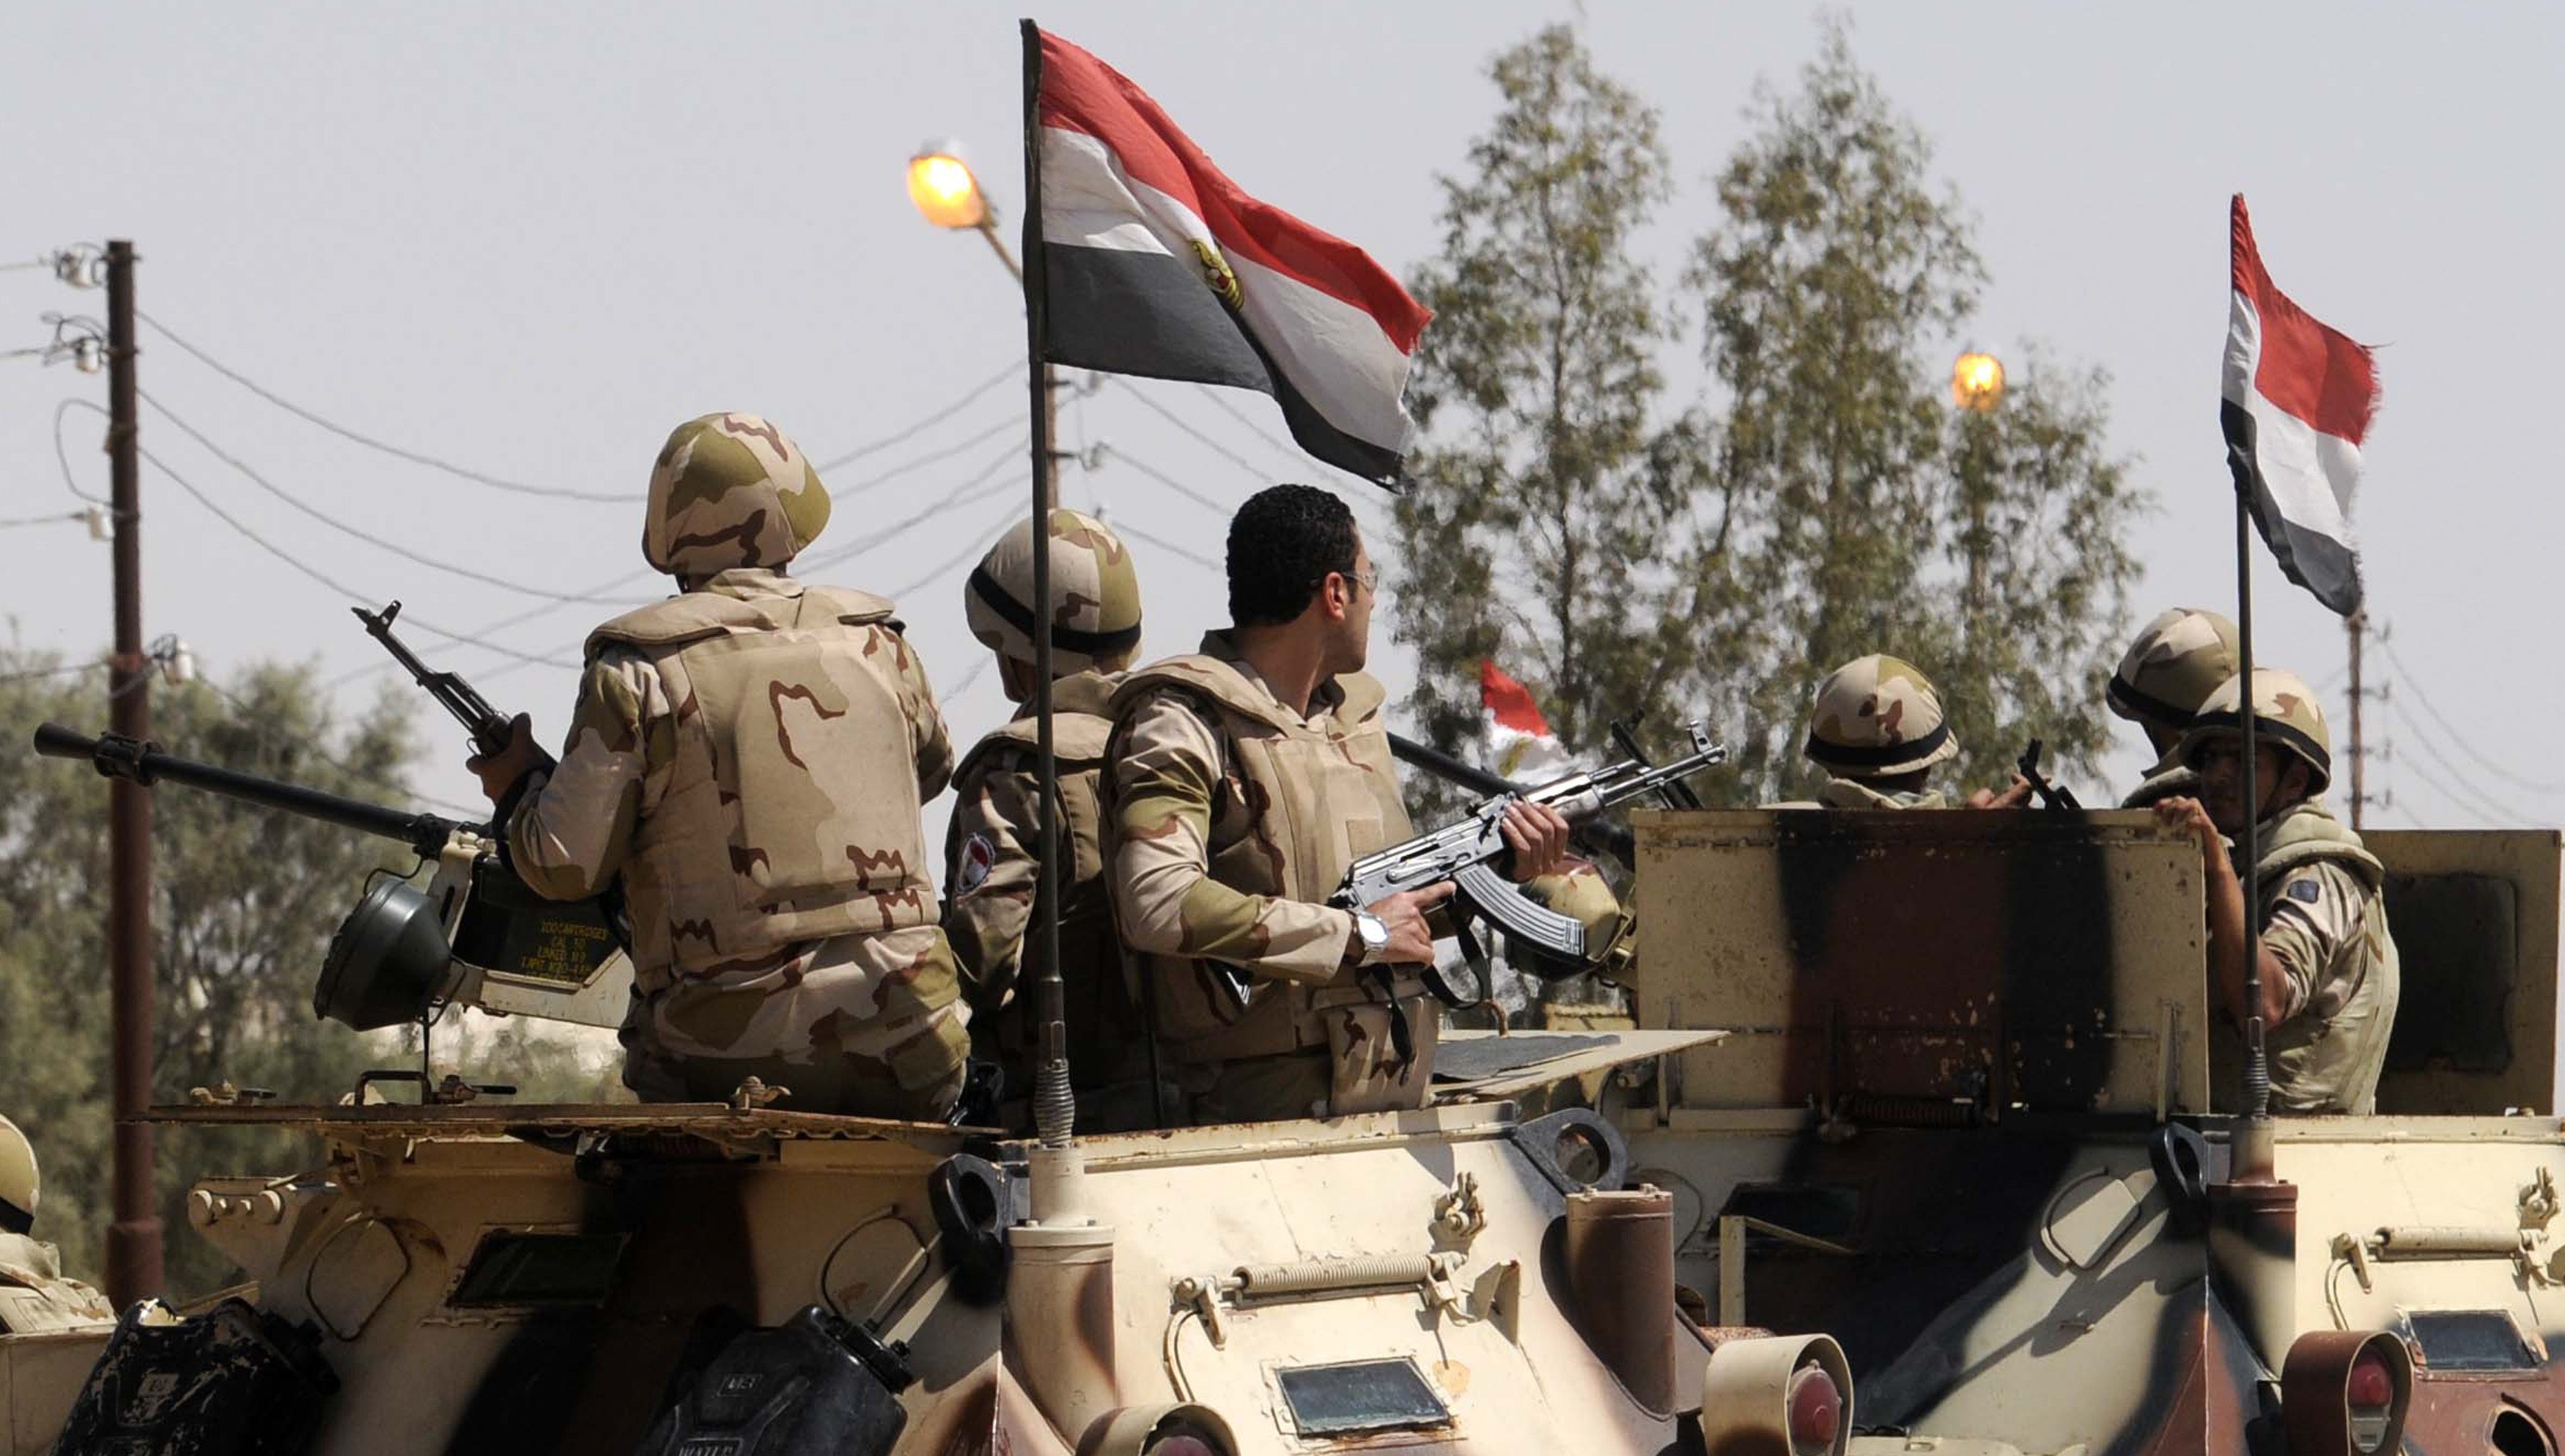 القوات المصرية تصفي 11 مسلحاً في إطار عملية سيناء 2018